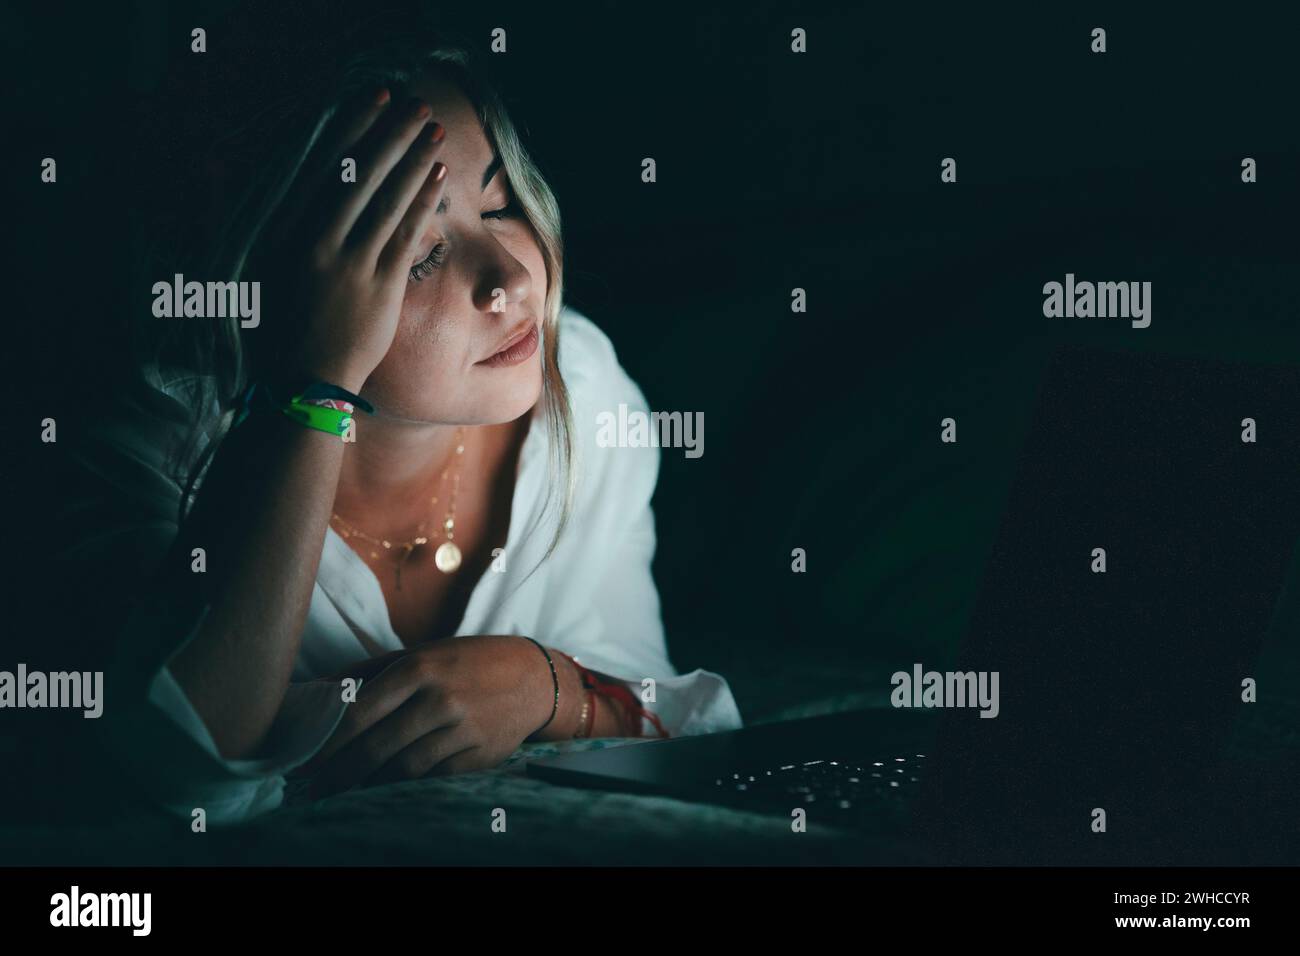 Überwältigter junger kaukasischer Student, der den Kopf berührt, unter verschwommenem Sehvermögen leidet, die Nasenbrücke massiert, die Schmerzen lindert, sich erschöpft fühlt, am späten Abend am Computer im Bett zu arbeiten. Stockfoto